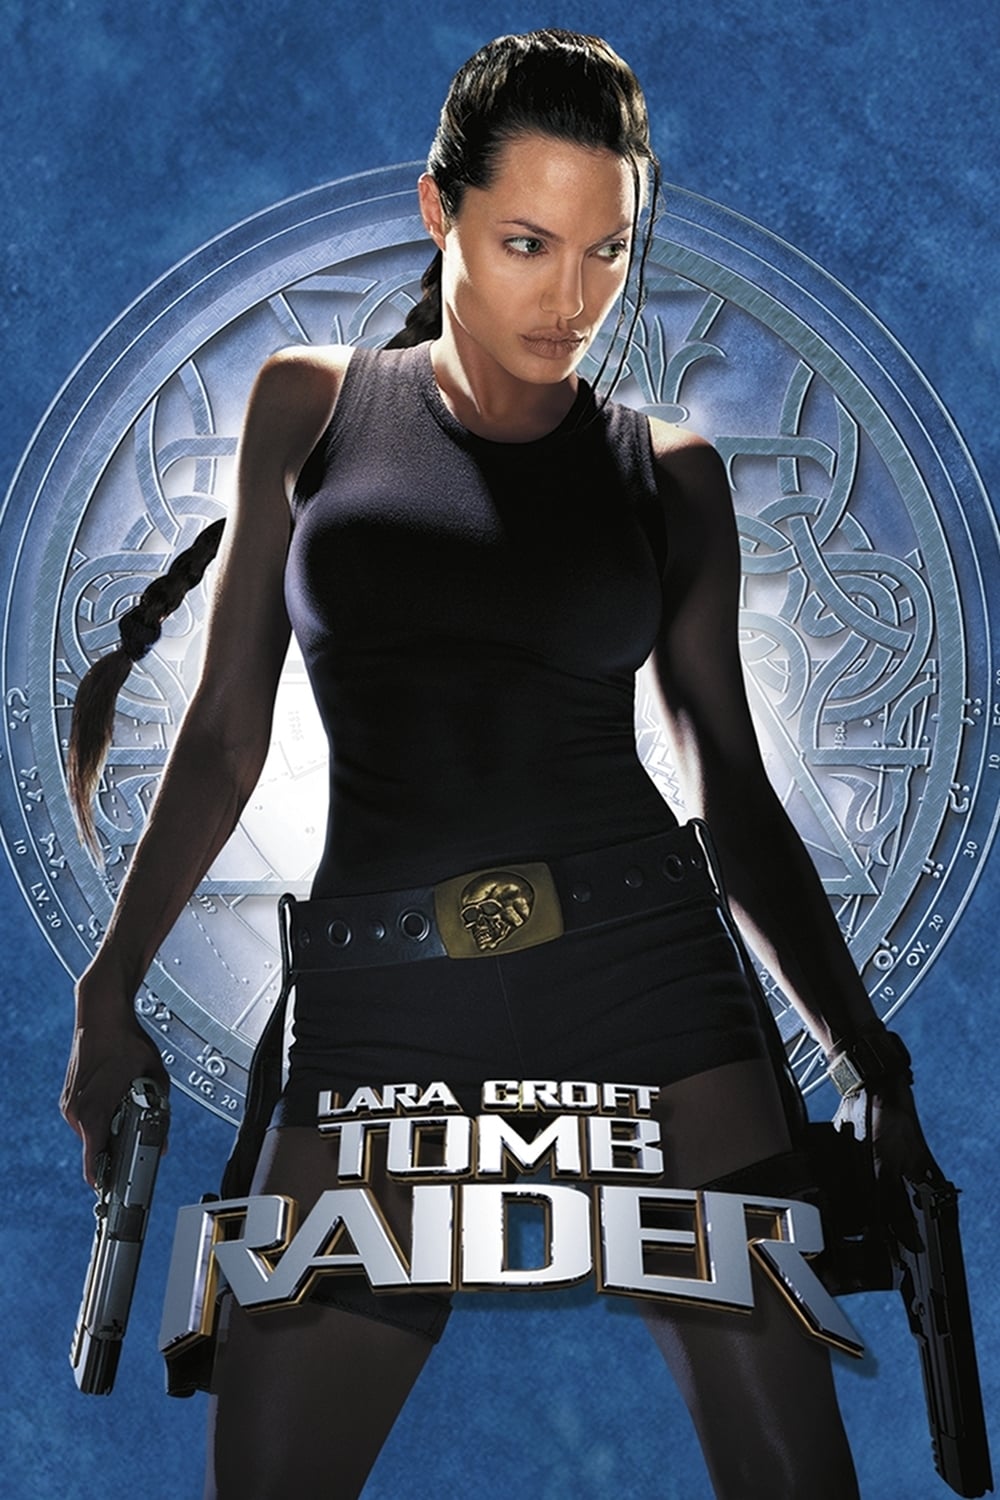 Plakat von "Lara Croft: Tomb Raider"